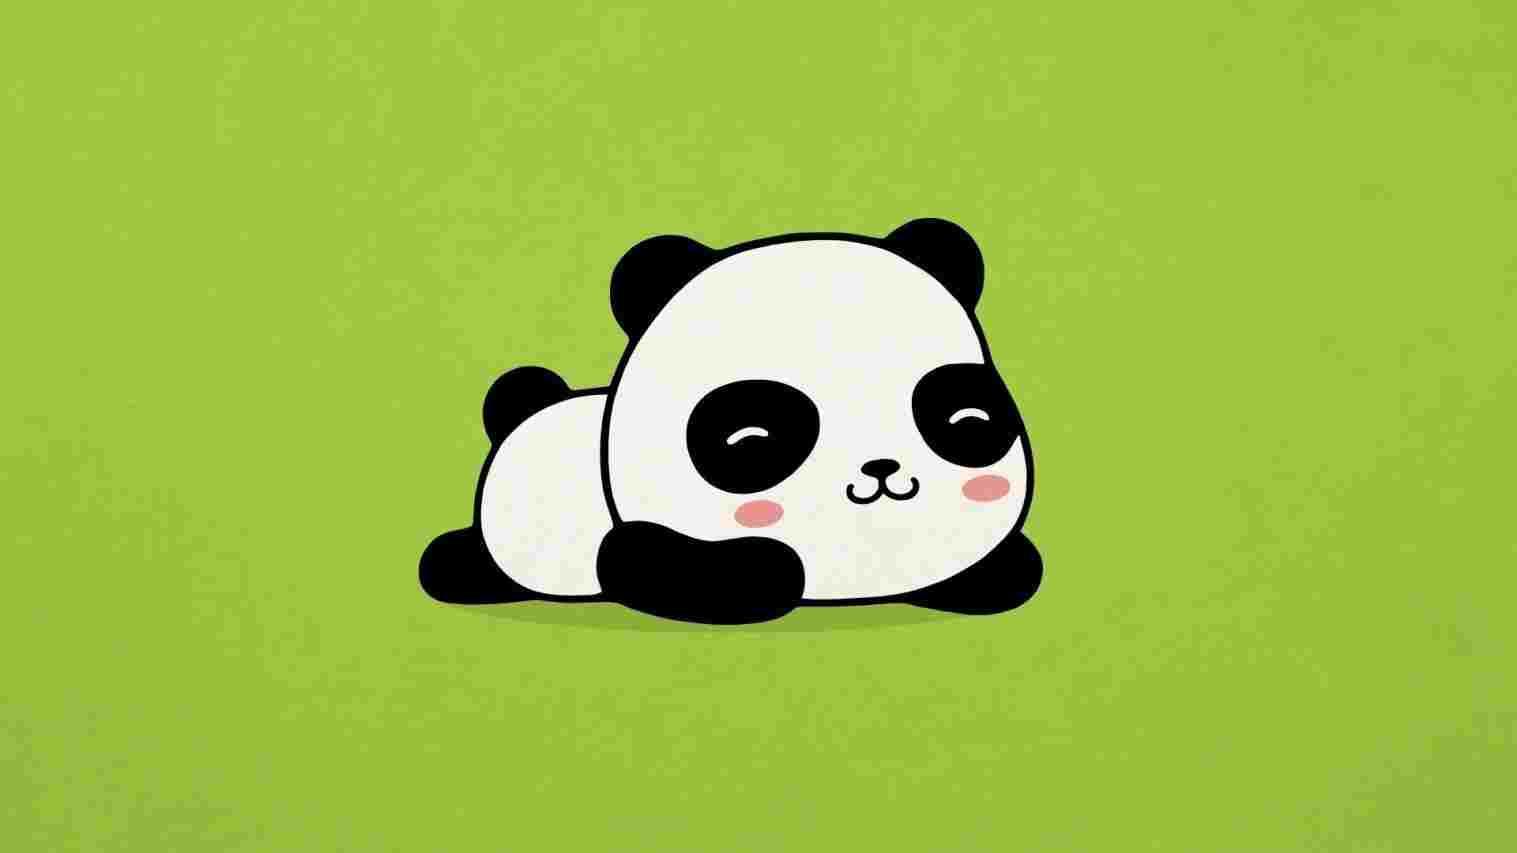 cute kawaii panda drawings.com